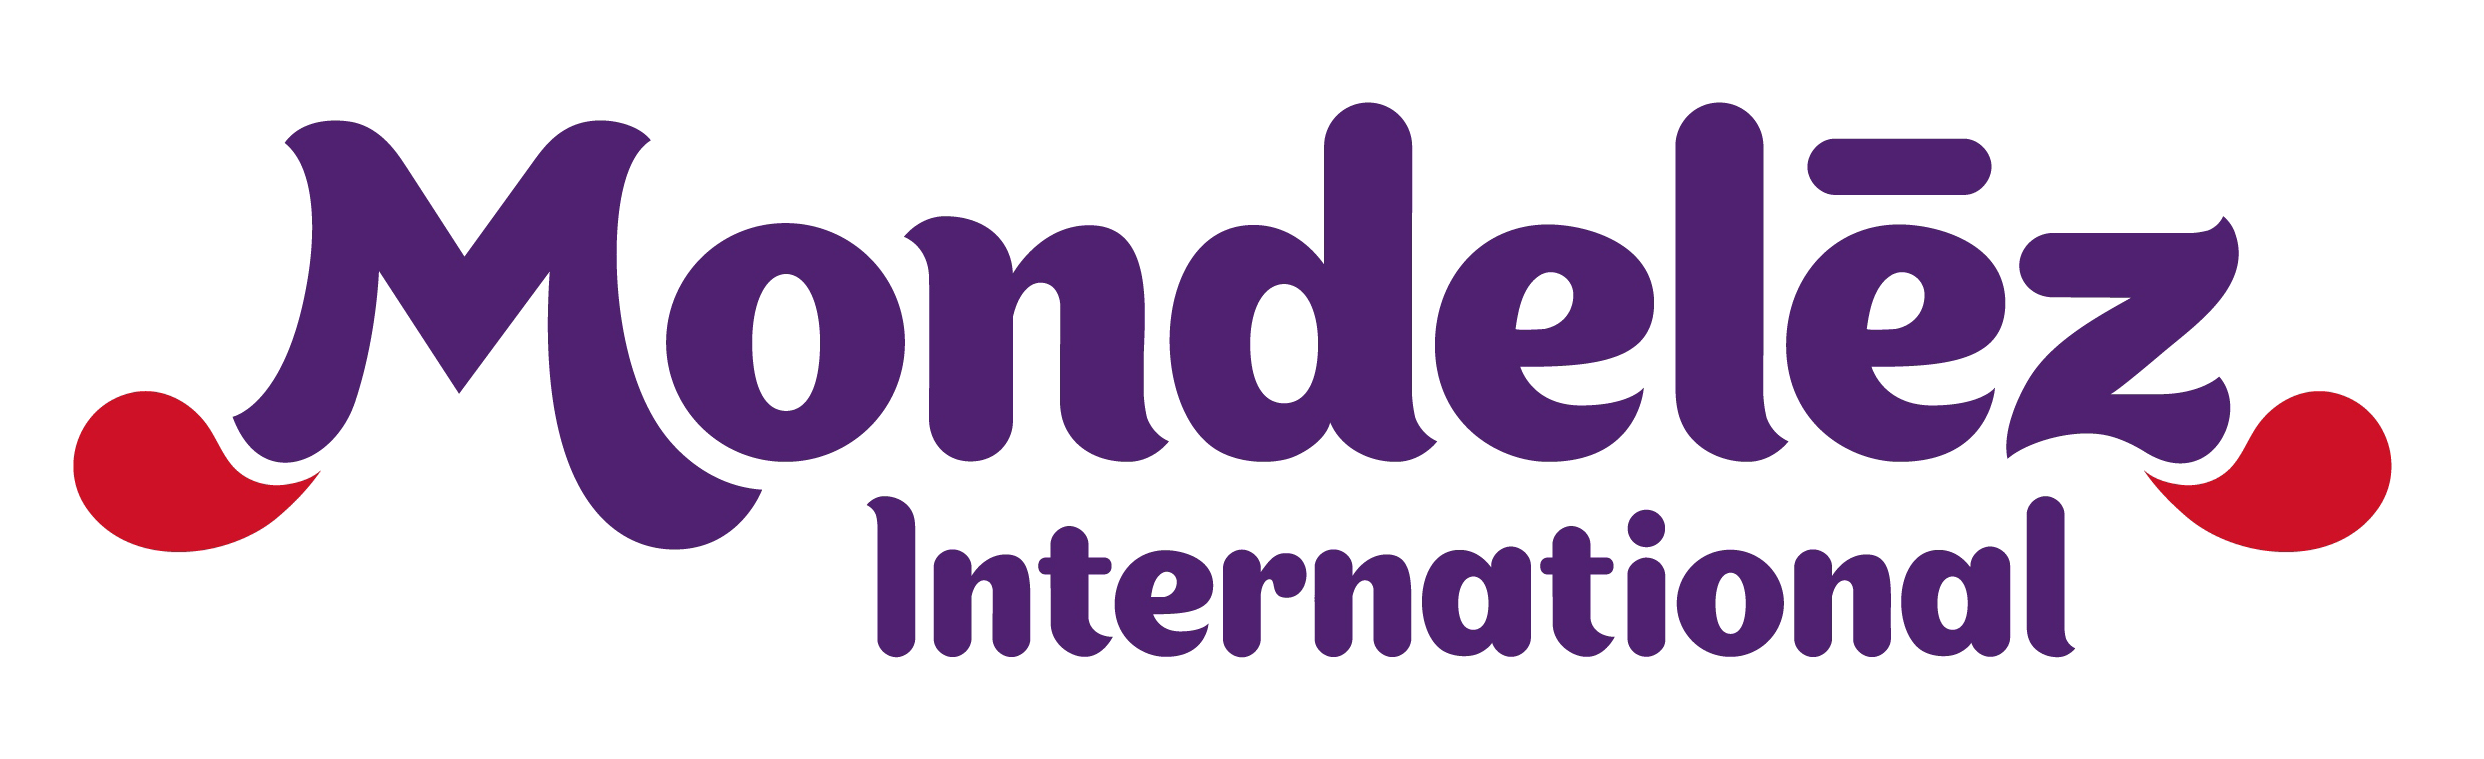 Mondelez International Logo PNG Image